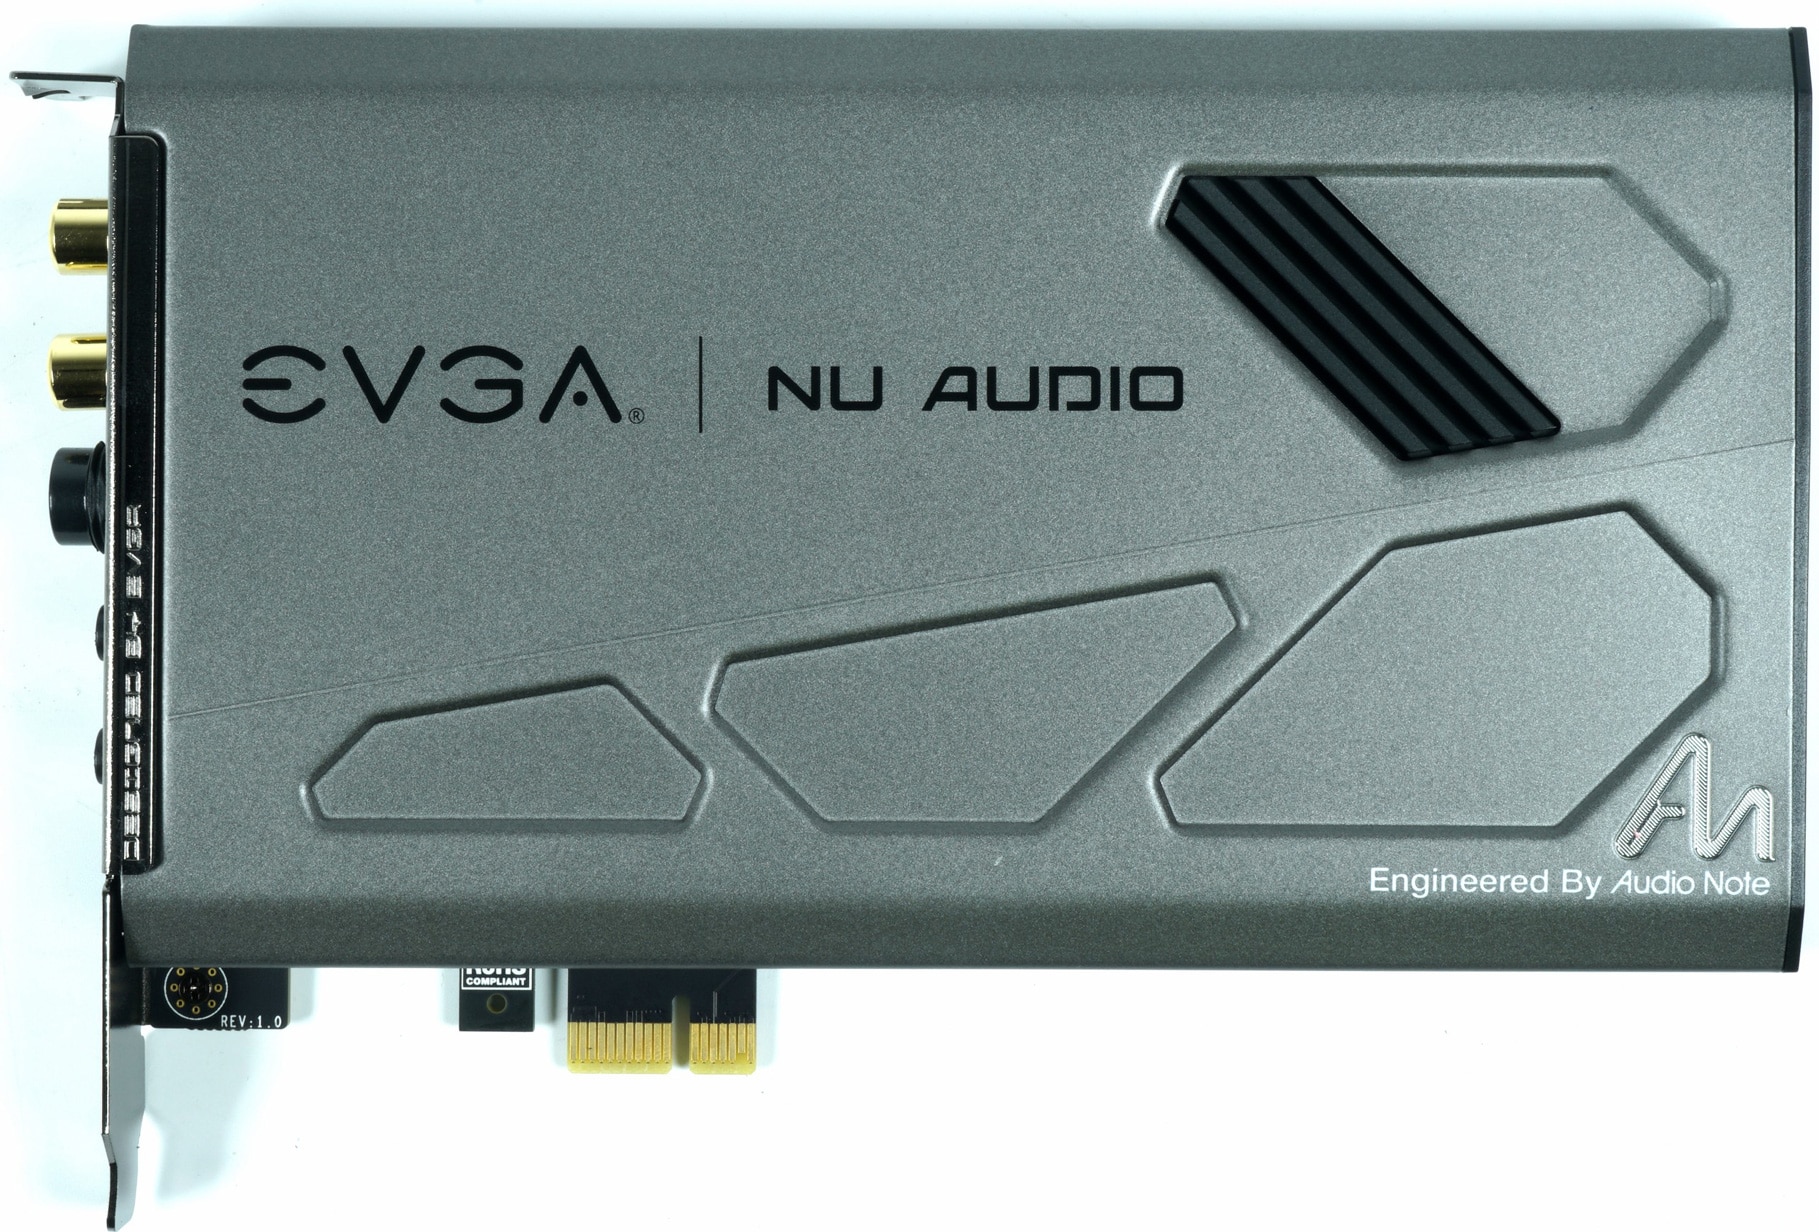 Image 4 : Test : EVGA NU Audio, la nouvelle carte son de référence ?